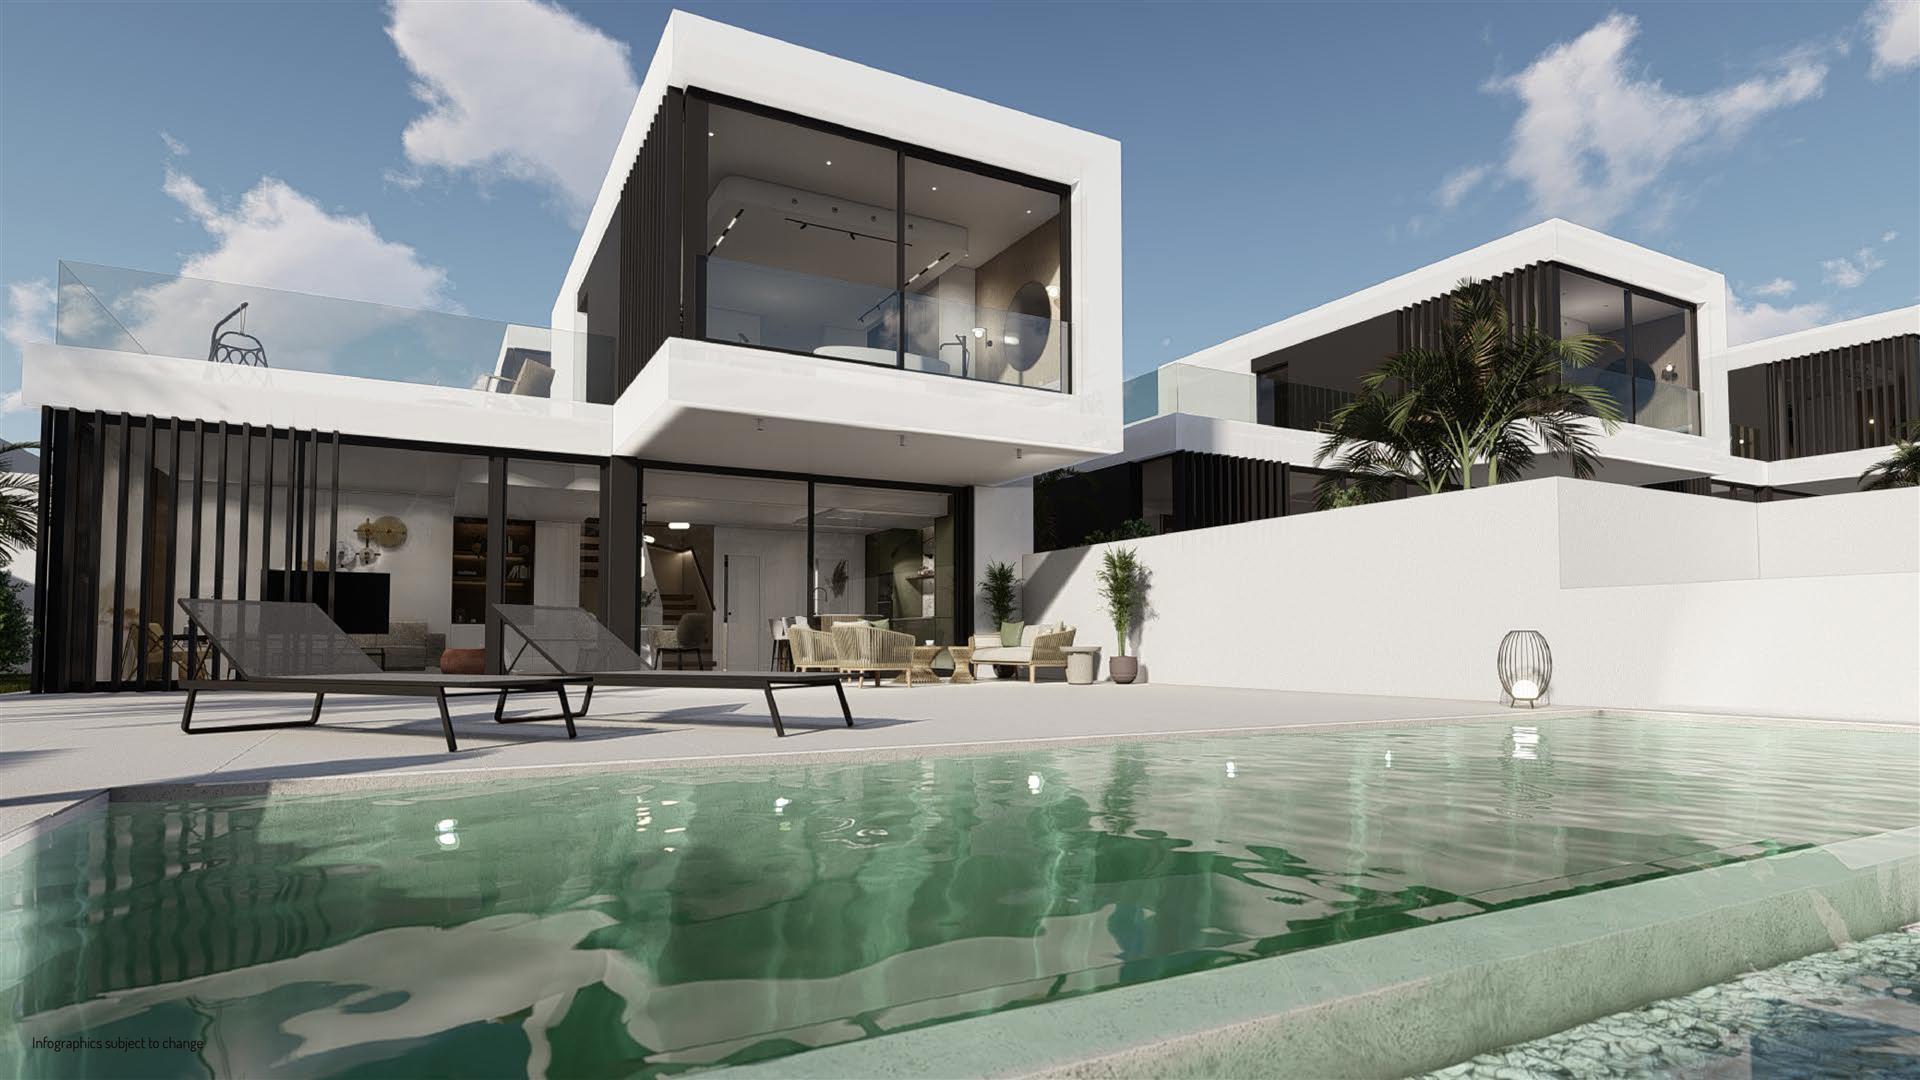 Impresionante villa de estilo moderno en costa blanca